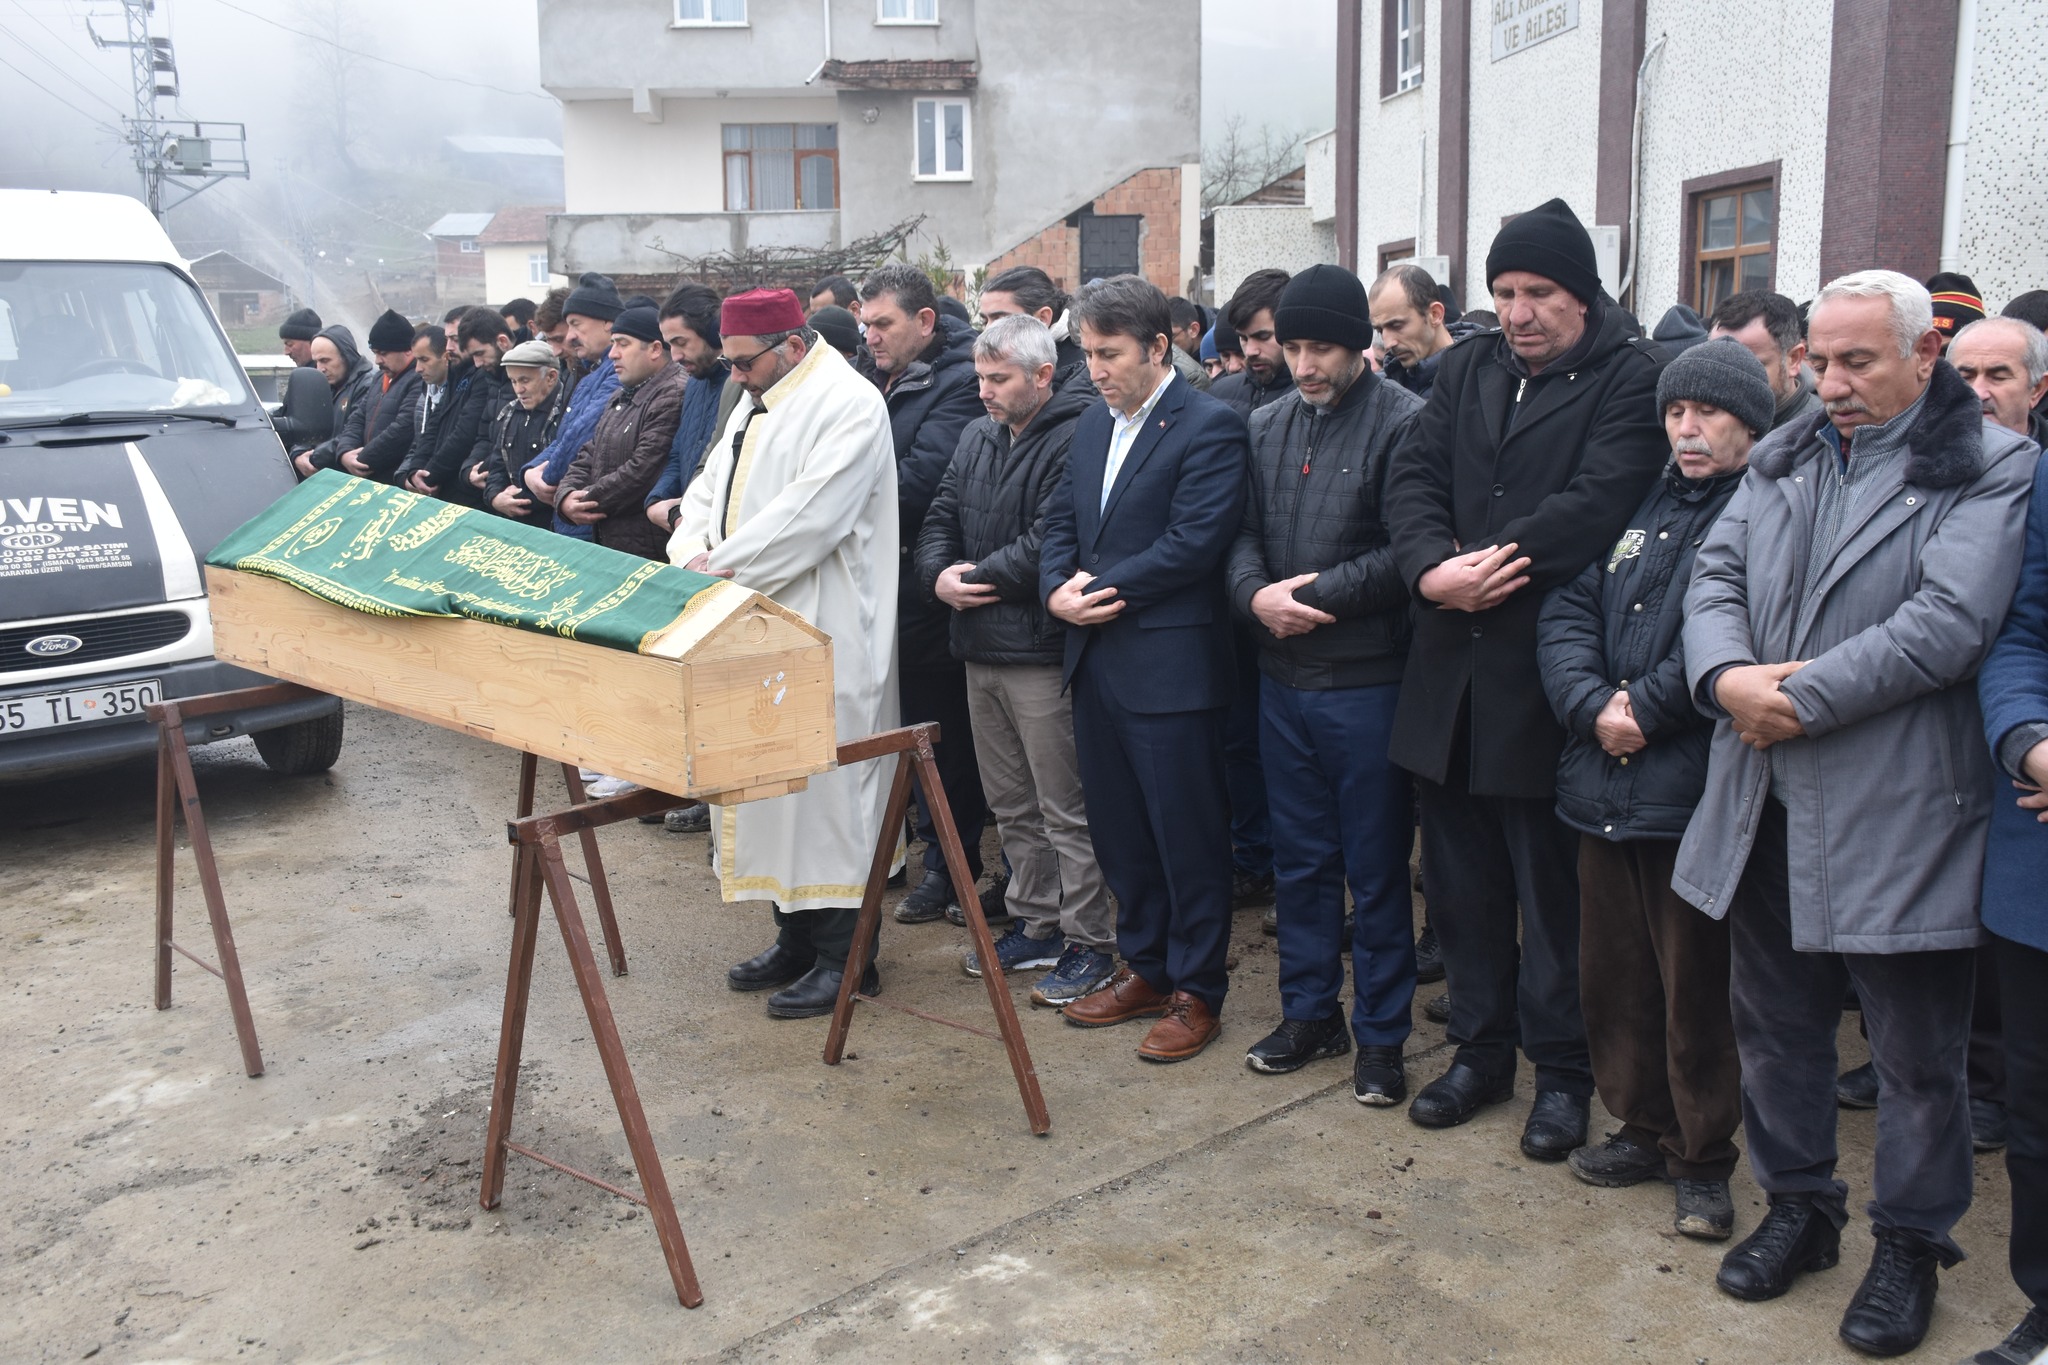 Belediye Başkanımız Hüseyin Kıyma ilçemiz Karaaba Çökeyan mahallesi halkından vefat eden Rahmi Türkmen’in cenaze namazına katıldı, ailesine baş sağlığında bulundu.